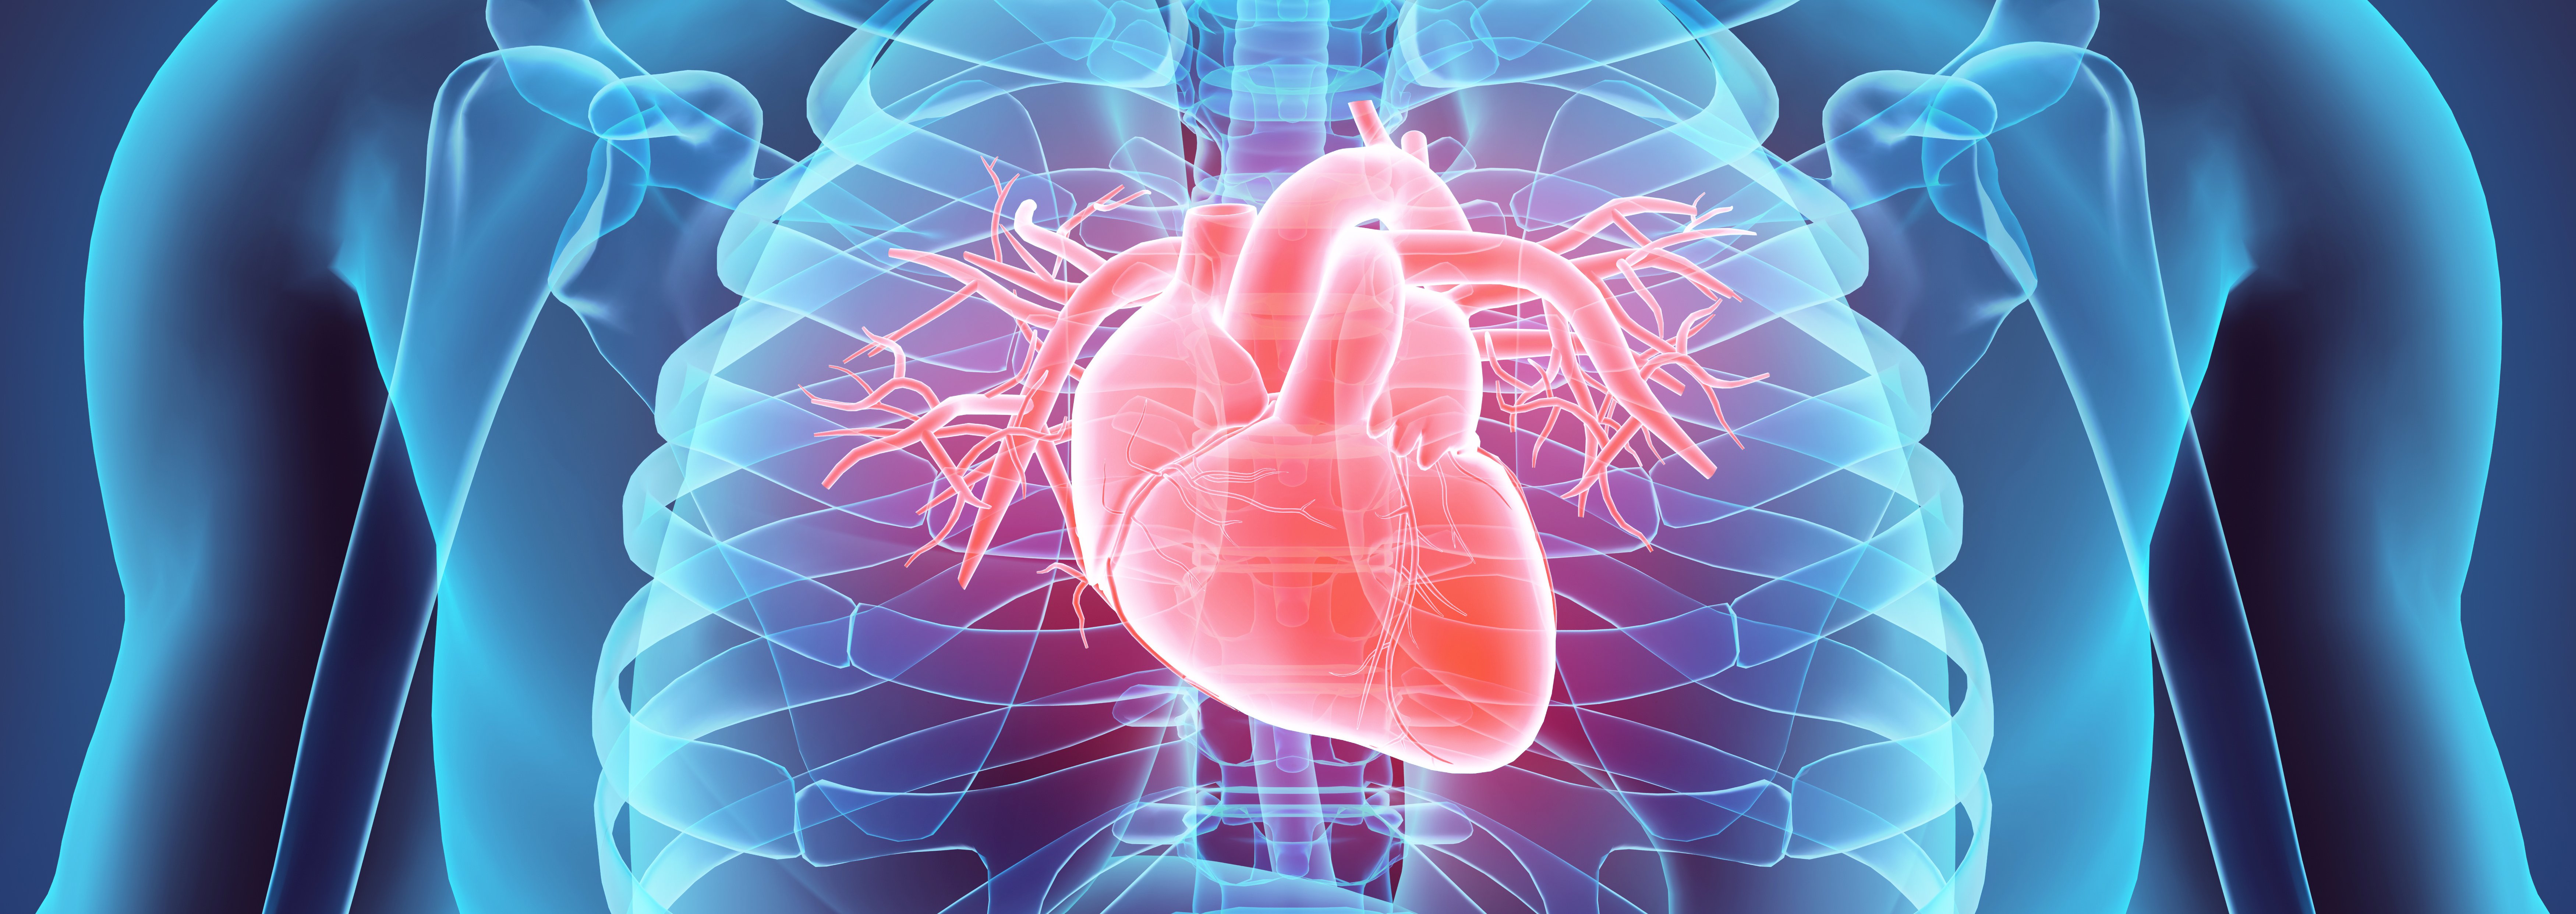 Herz: Perfusion, Vitalität, Amyloidose am UKR